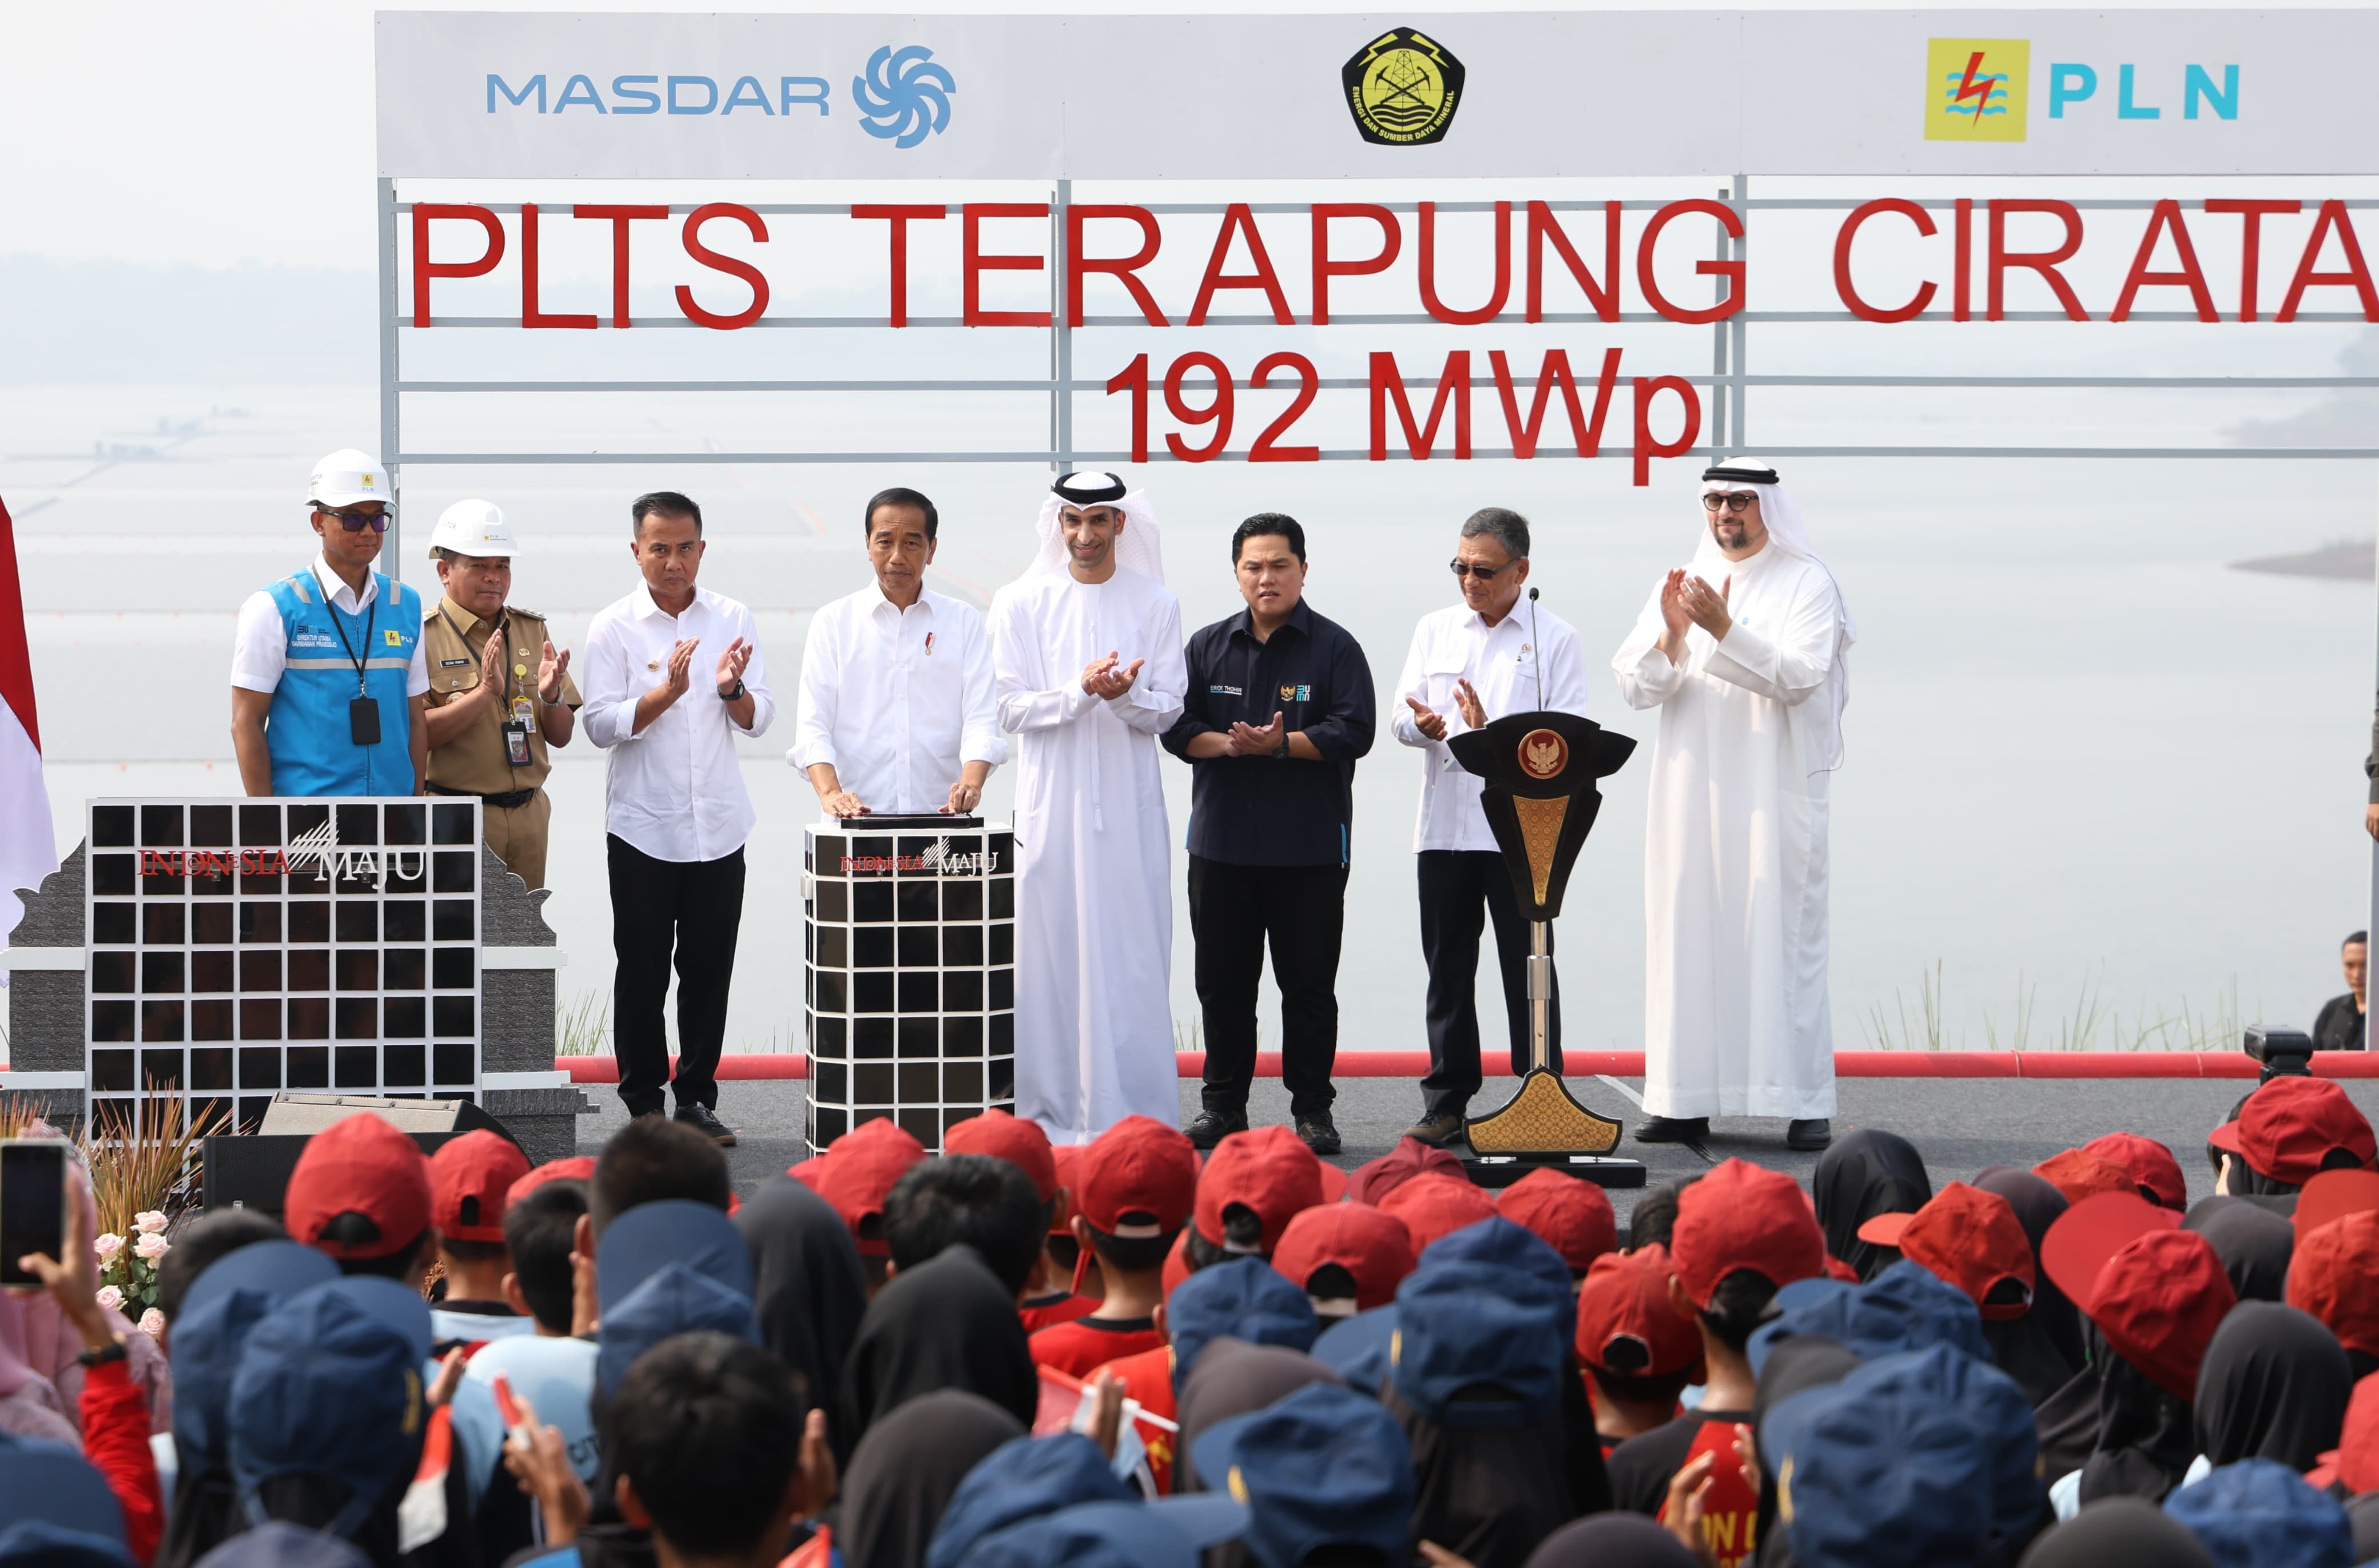 Presiden Jokowi Resmikan PLTS Terapung Cirata 192 MWp, Terbesar di Asia Tenggara